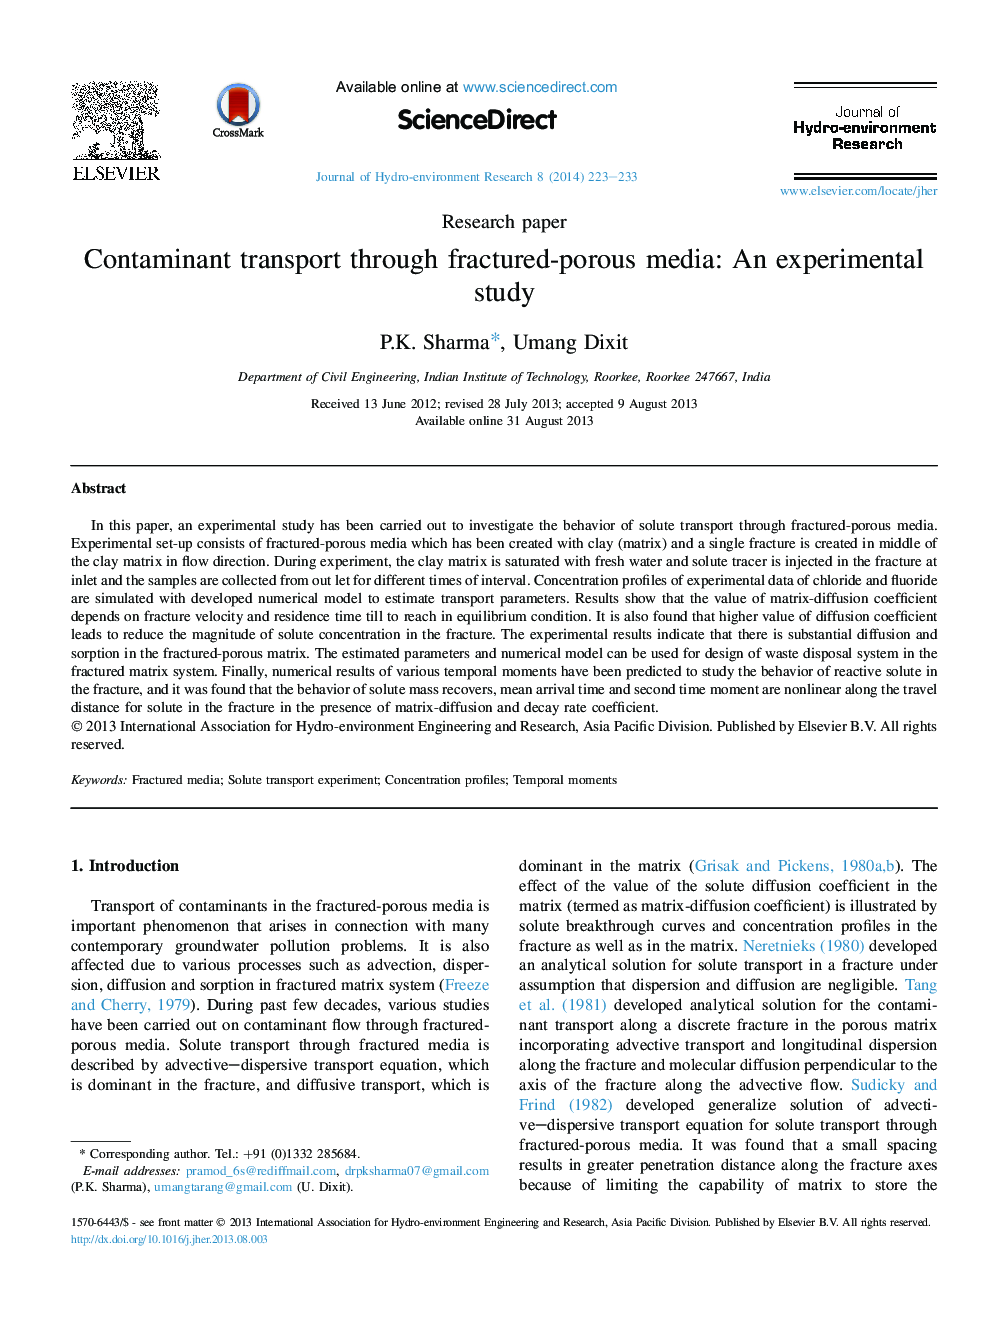 حمل و نقل آلودگی از طریق رسانه های متخلخل متخلخل: یک مطالعه تجربی 